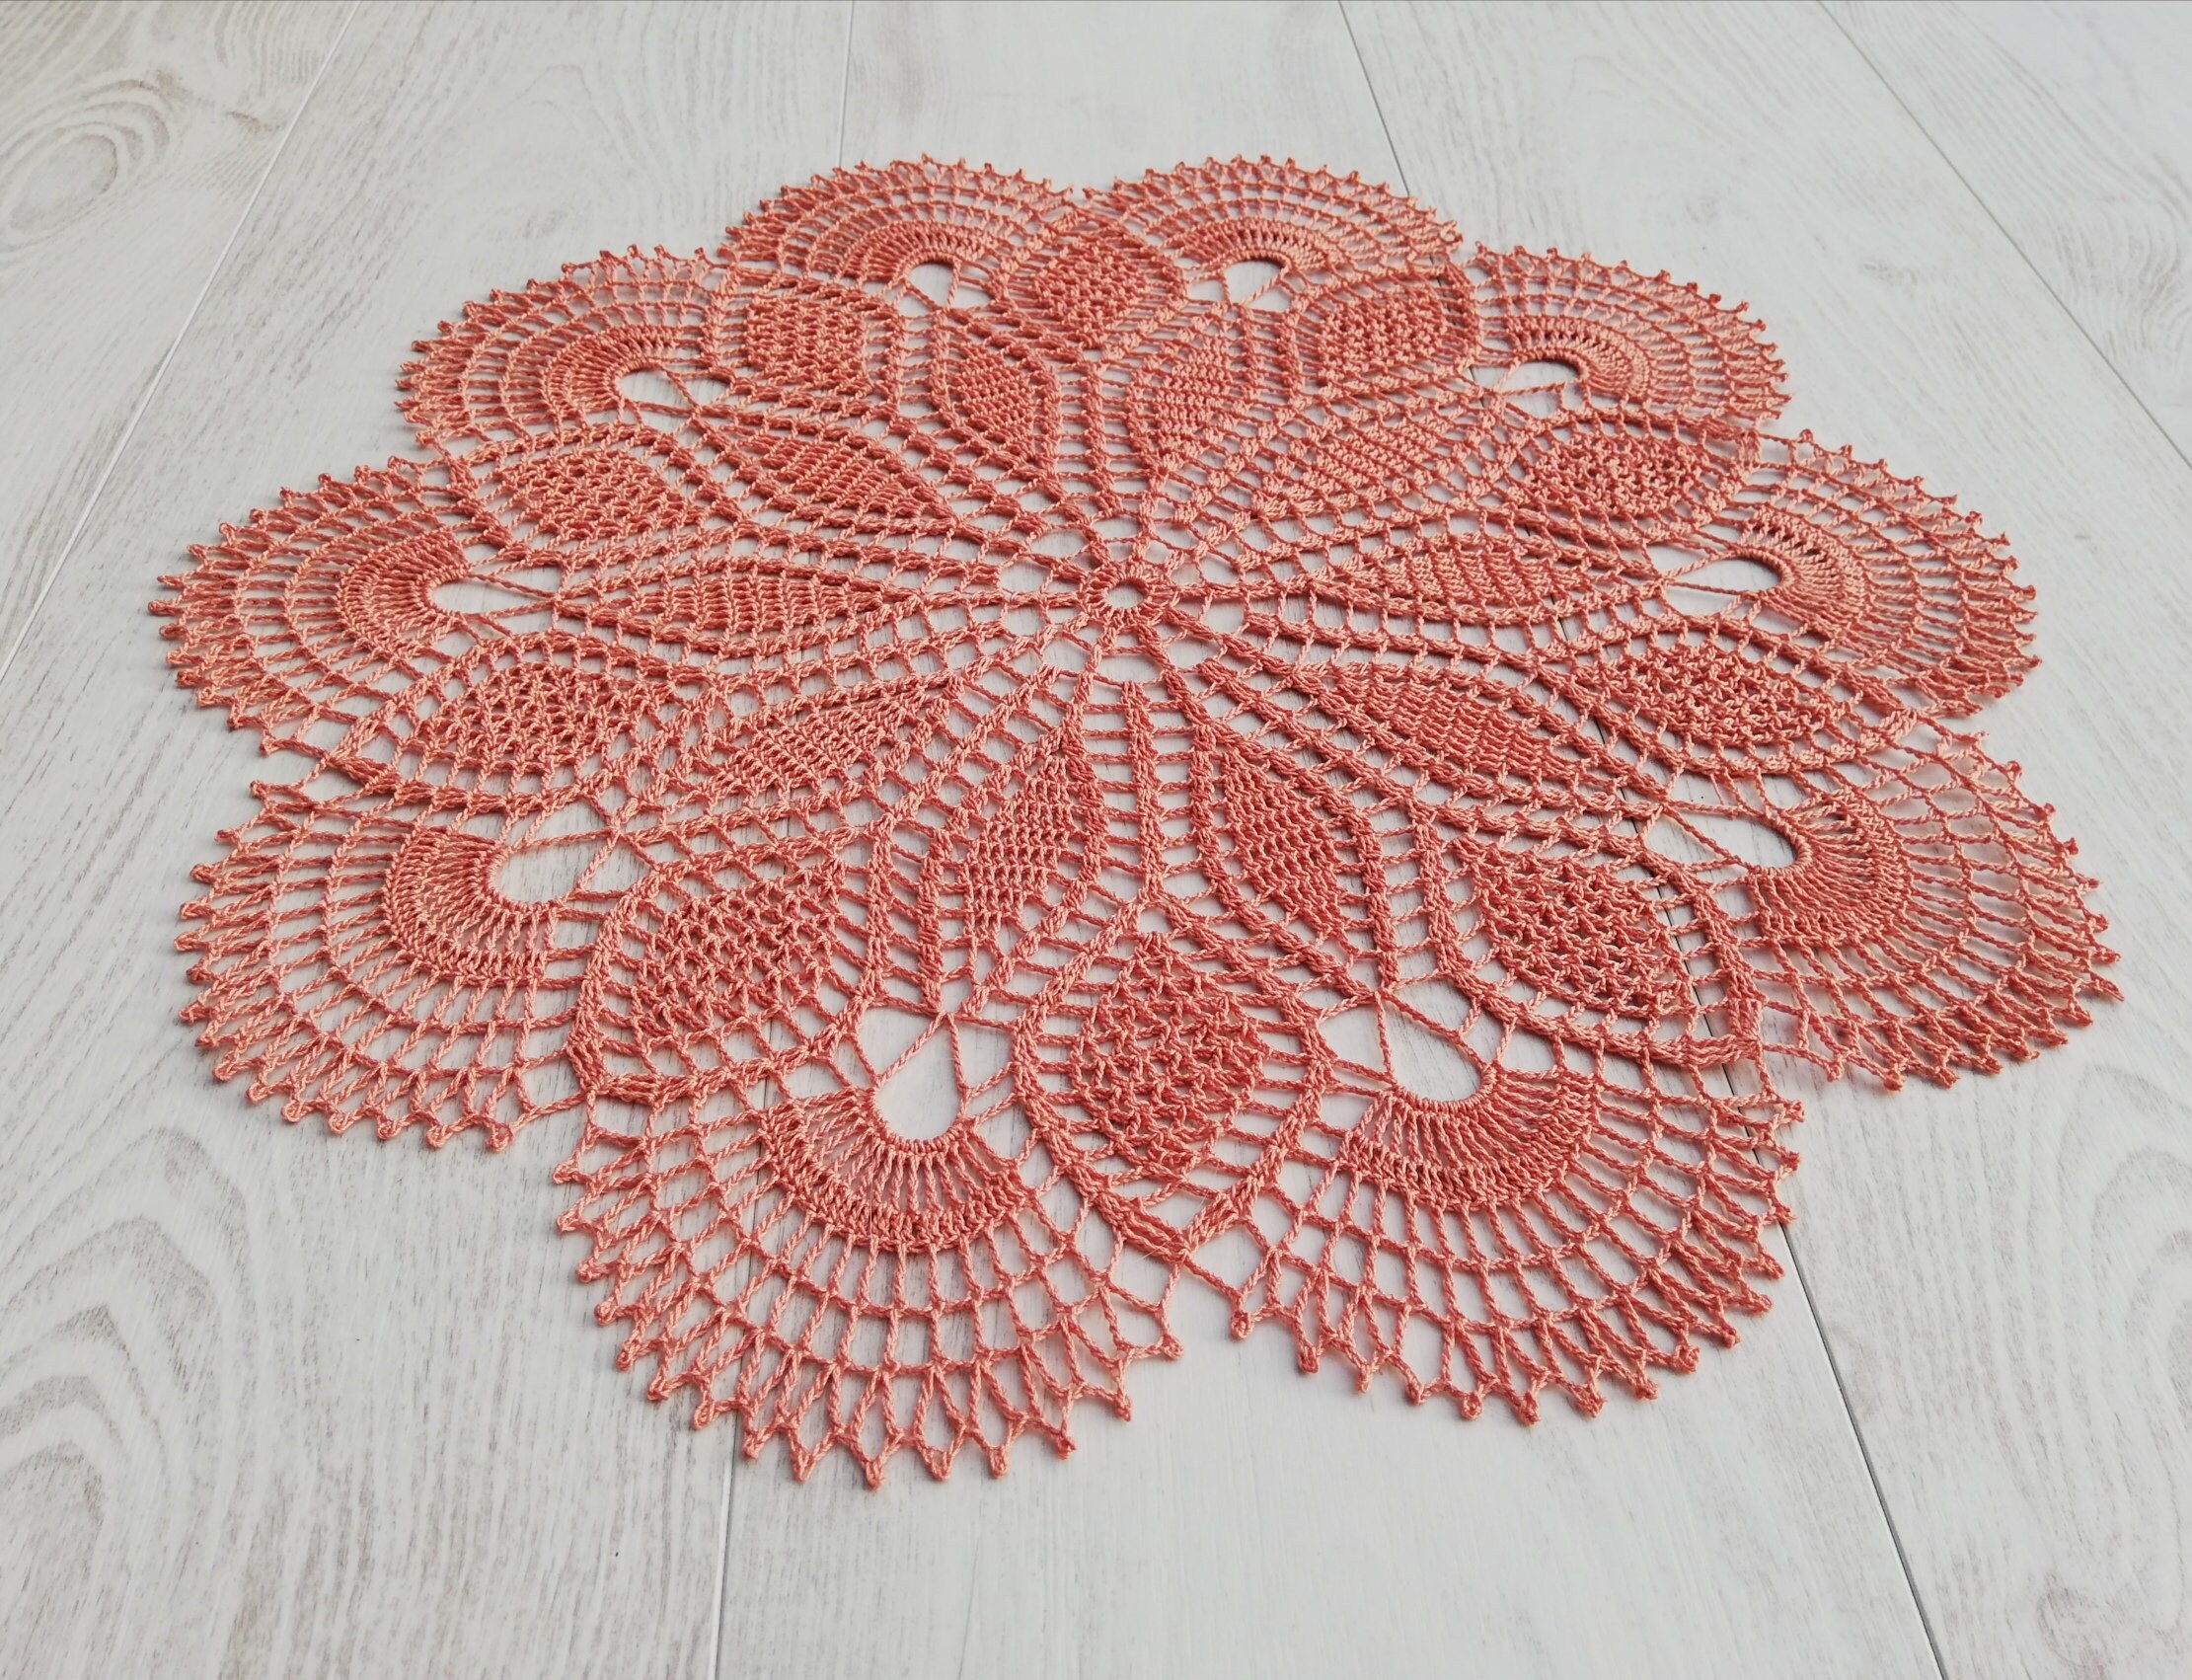 Corail Rond Clair Doily 45cm, Délicat et Très Détaillé Table Centre de Table, Nappe Rose Crochet, De